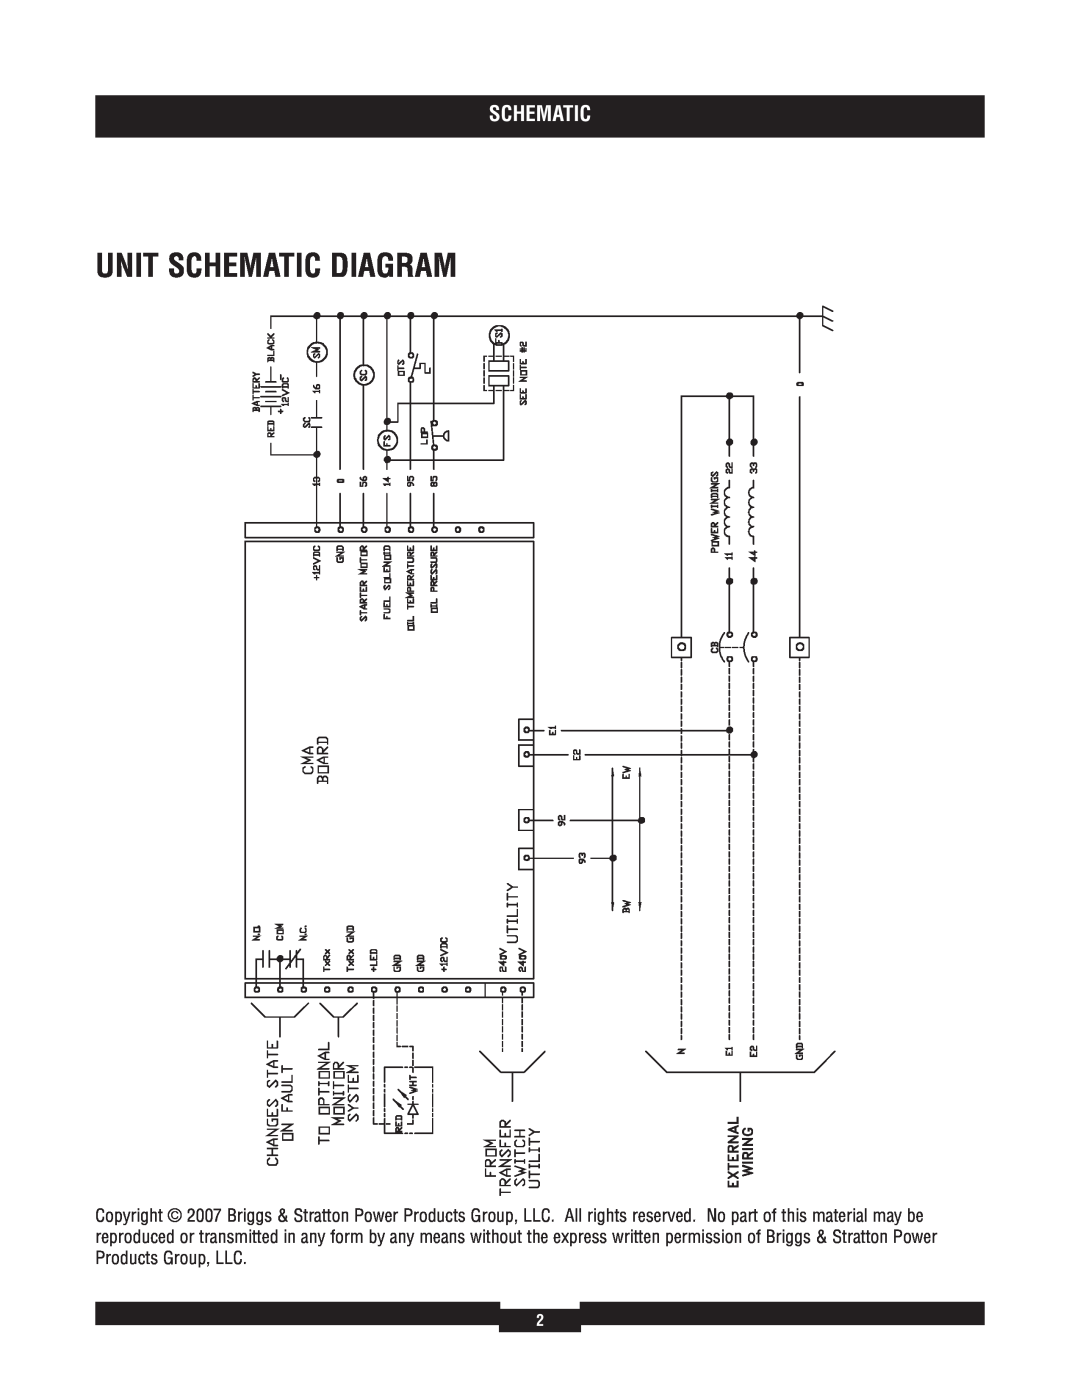 Briggs & Stratton 40273 manual Unit Schematic Diagram 